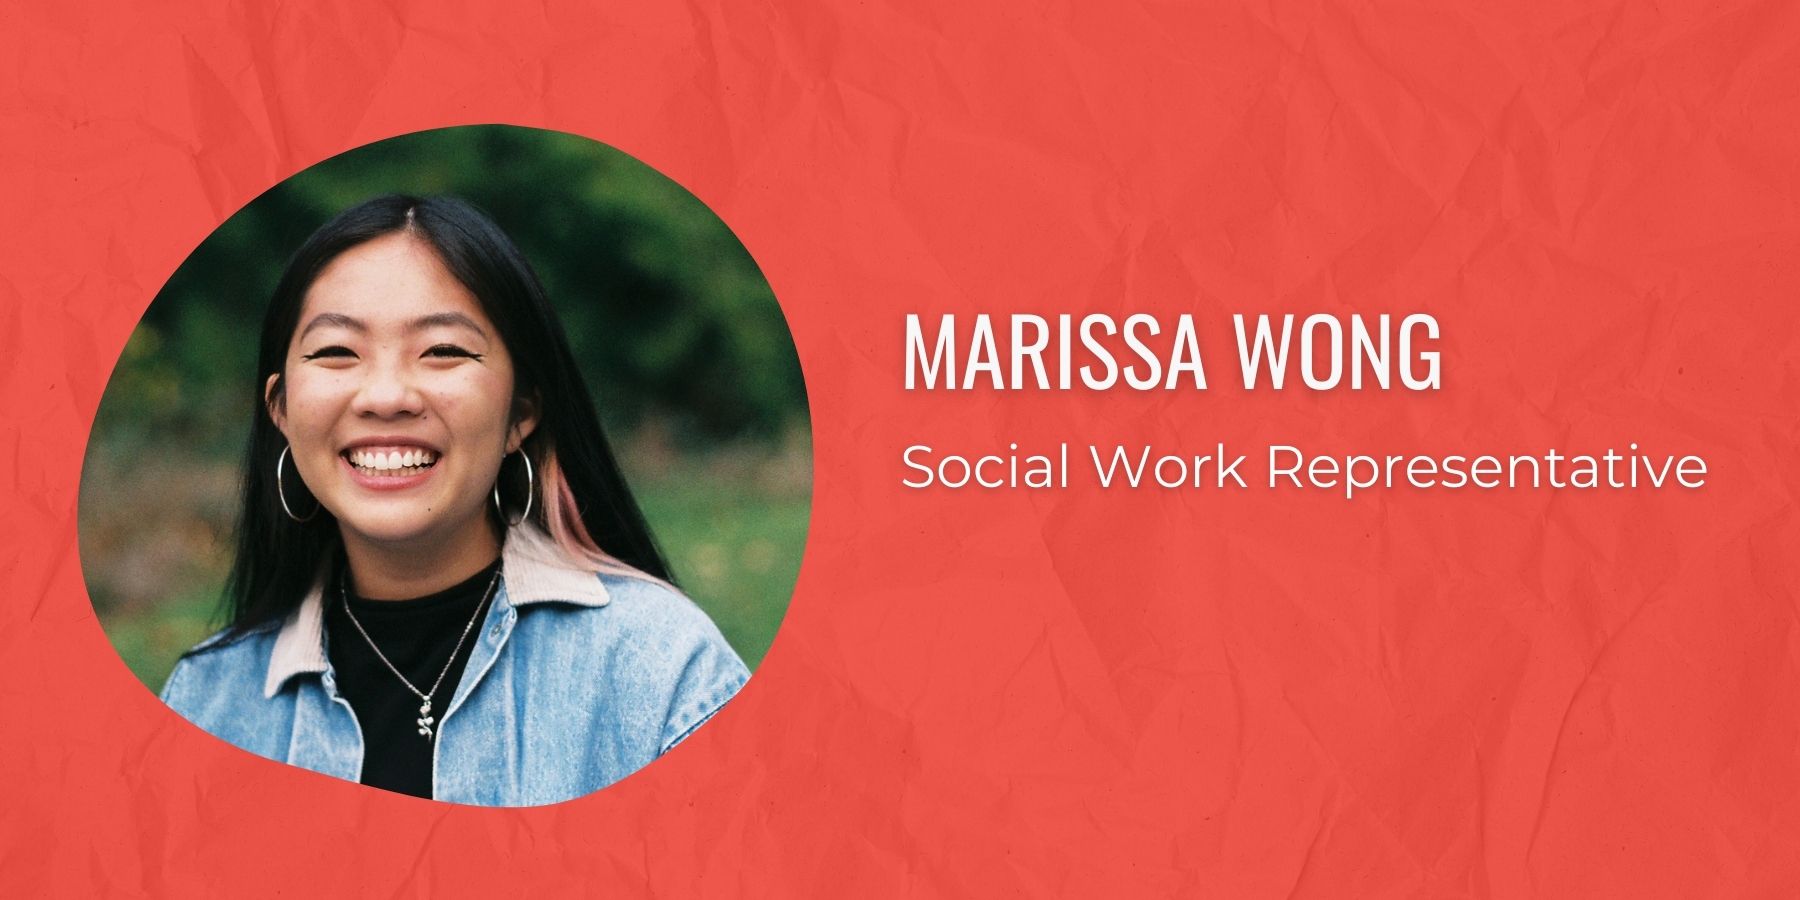 Photo of Marissa Wong and text: Social Work Representative